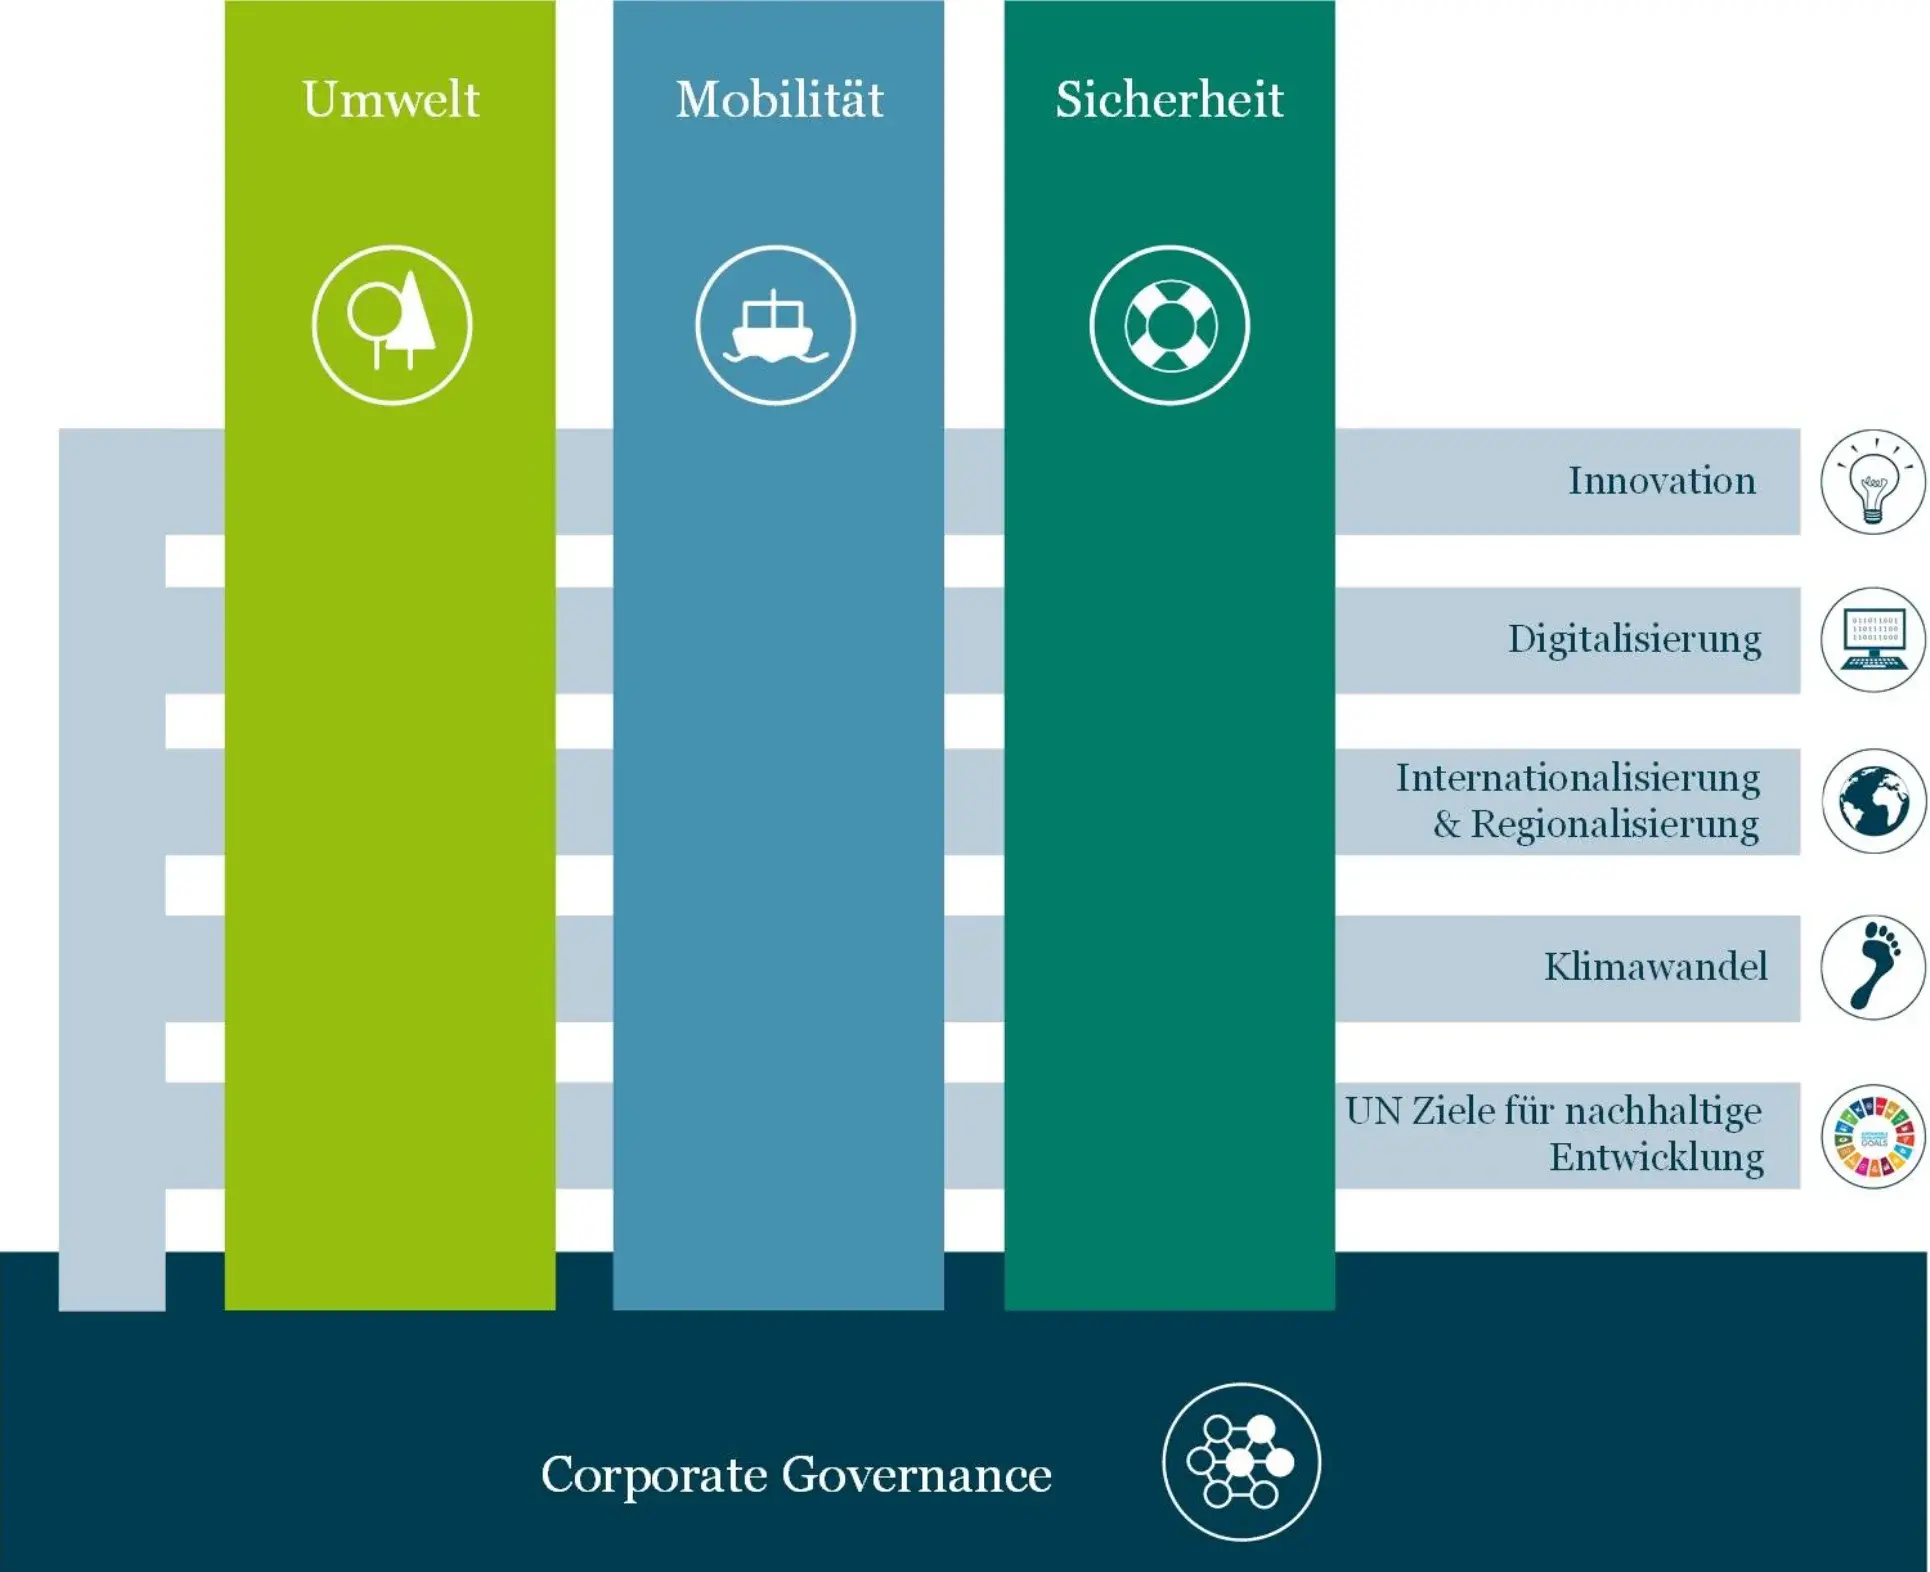 Säulendiagramm mit den drei Unternehmenssäulen Umwelt, Mobilität, Sicherheit, an der Basis: Corporate Governance